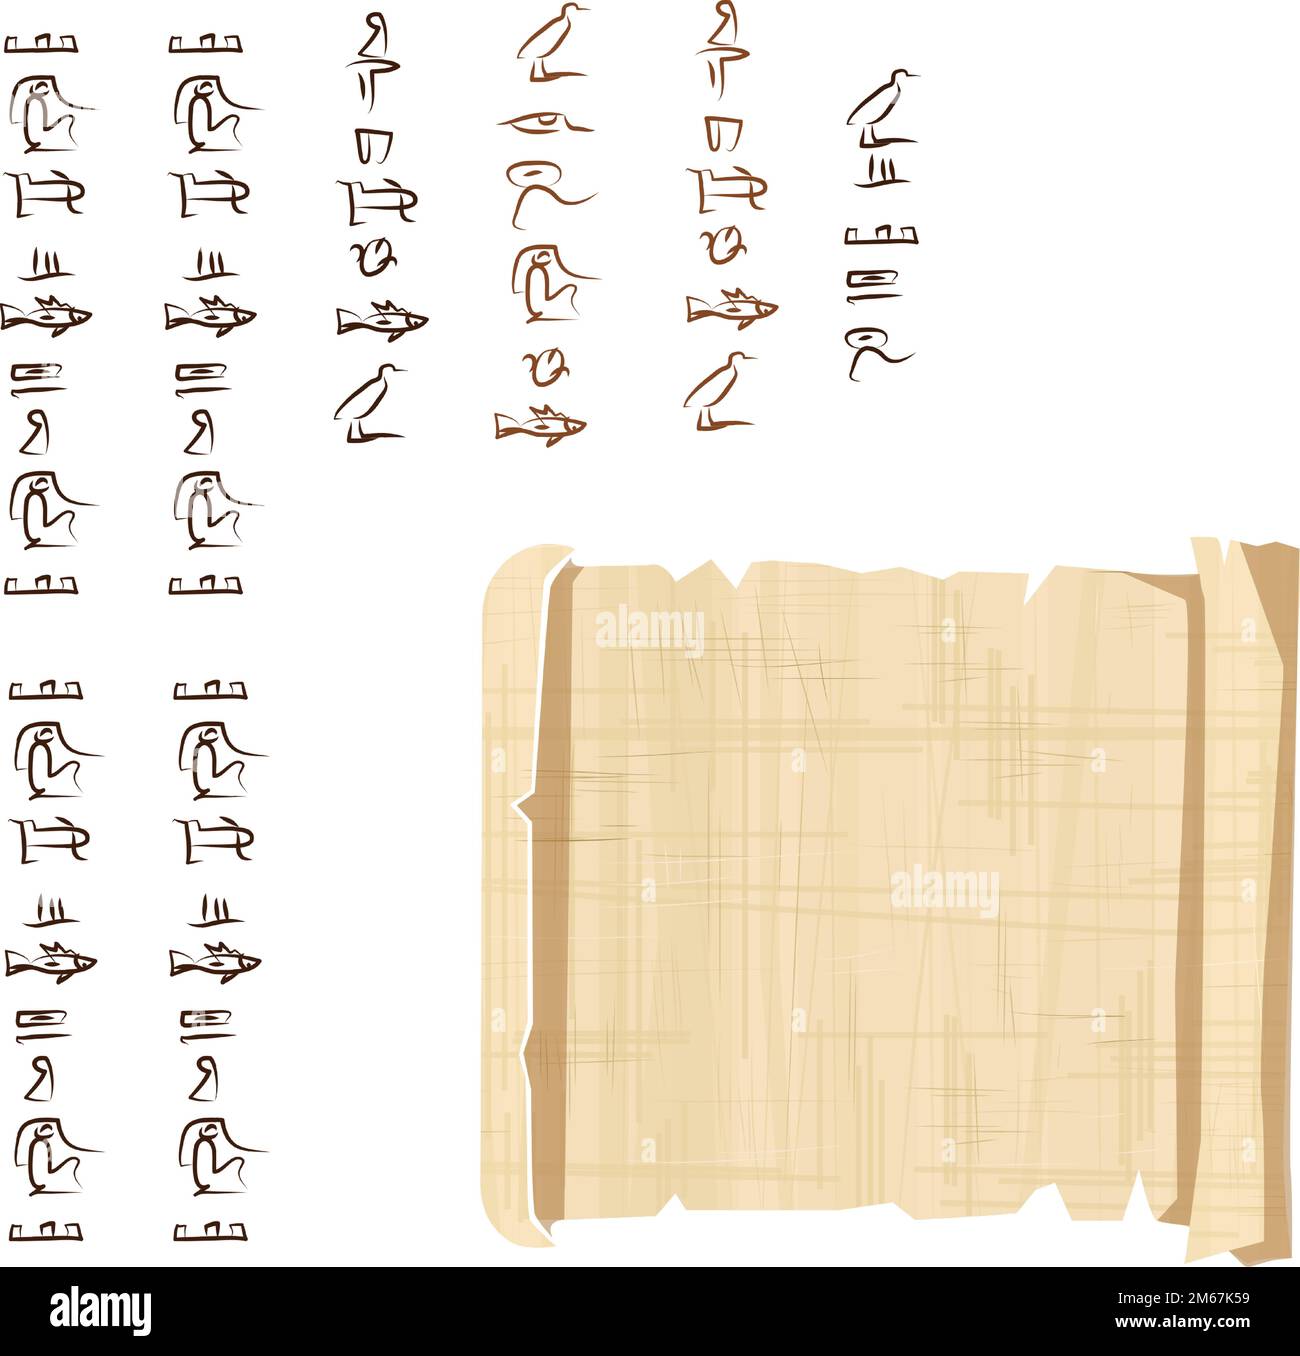 Alte ägyptische Papyrus-Scroll-Cartoon-Vektordarstellung. Ägyptisches Kultursymbol, entfaltetes, altes Papier zur Speicherung von Informationen, isoliert auf weißem Hintergrund Stock Vektor